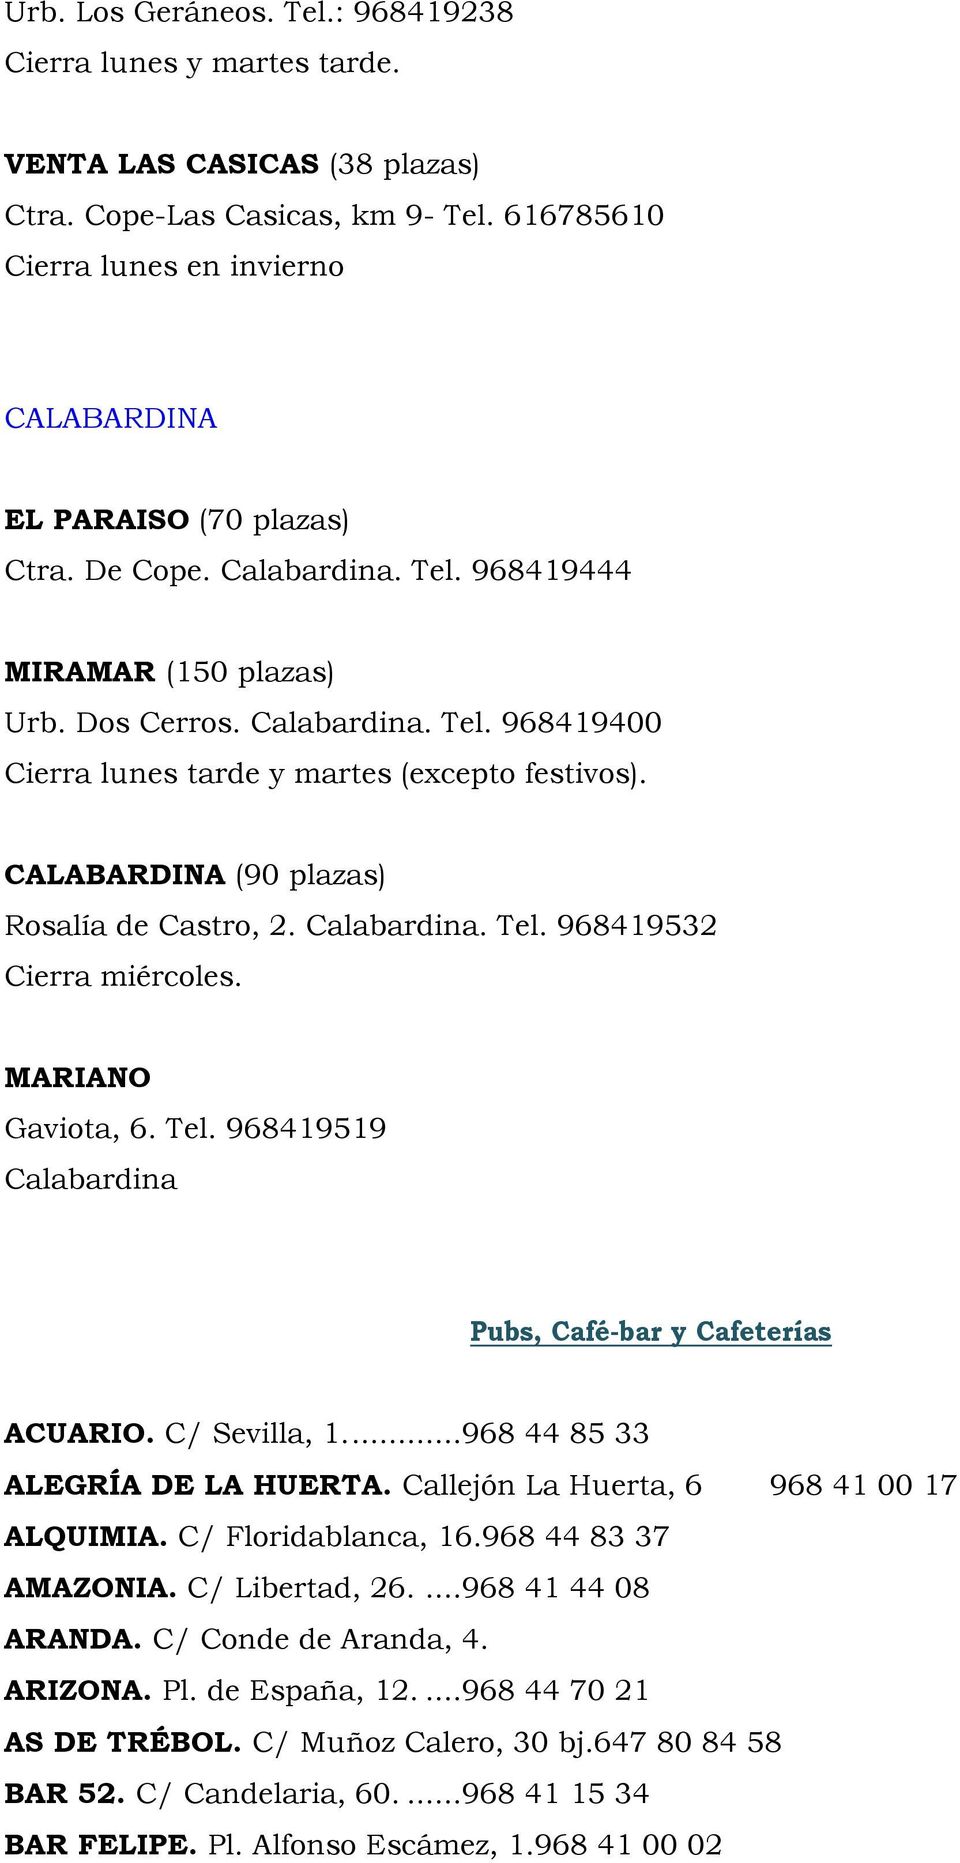 CALABARDINA (90 plazas) Rosalía de Castro, 2. Calabardina. Tel. 968419532 Cierra miércoles. MARIANO Gaviota, 6. Tel. 968419519 Calabardina Pubs, Café-bar y Cafeterías ACUARIO. C/ Sevilla, 1.